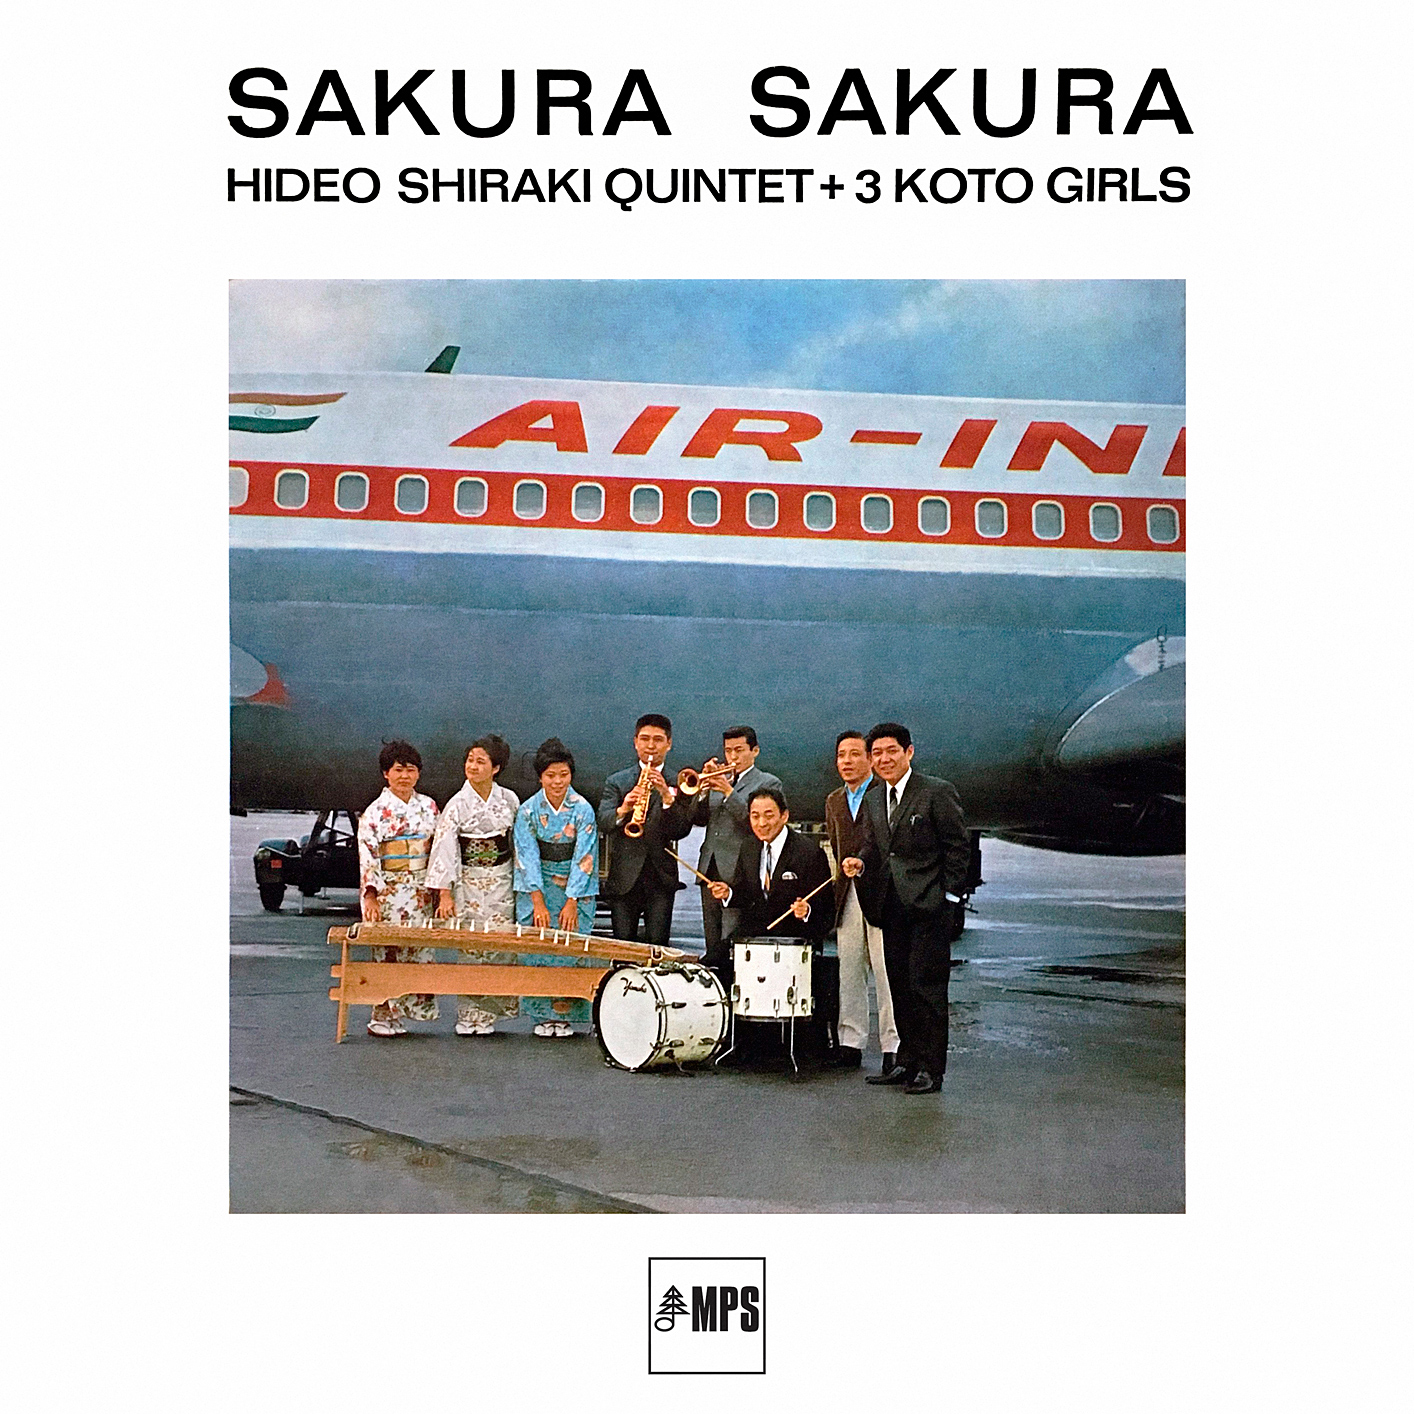 Hideo Shiraki Quintet + 3 Koto Girls - Sakura Sakura (1965/2016) [HighResAudio FLAC 24bit/88,2kHz]